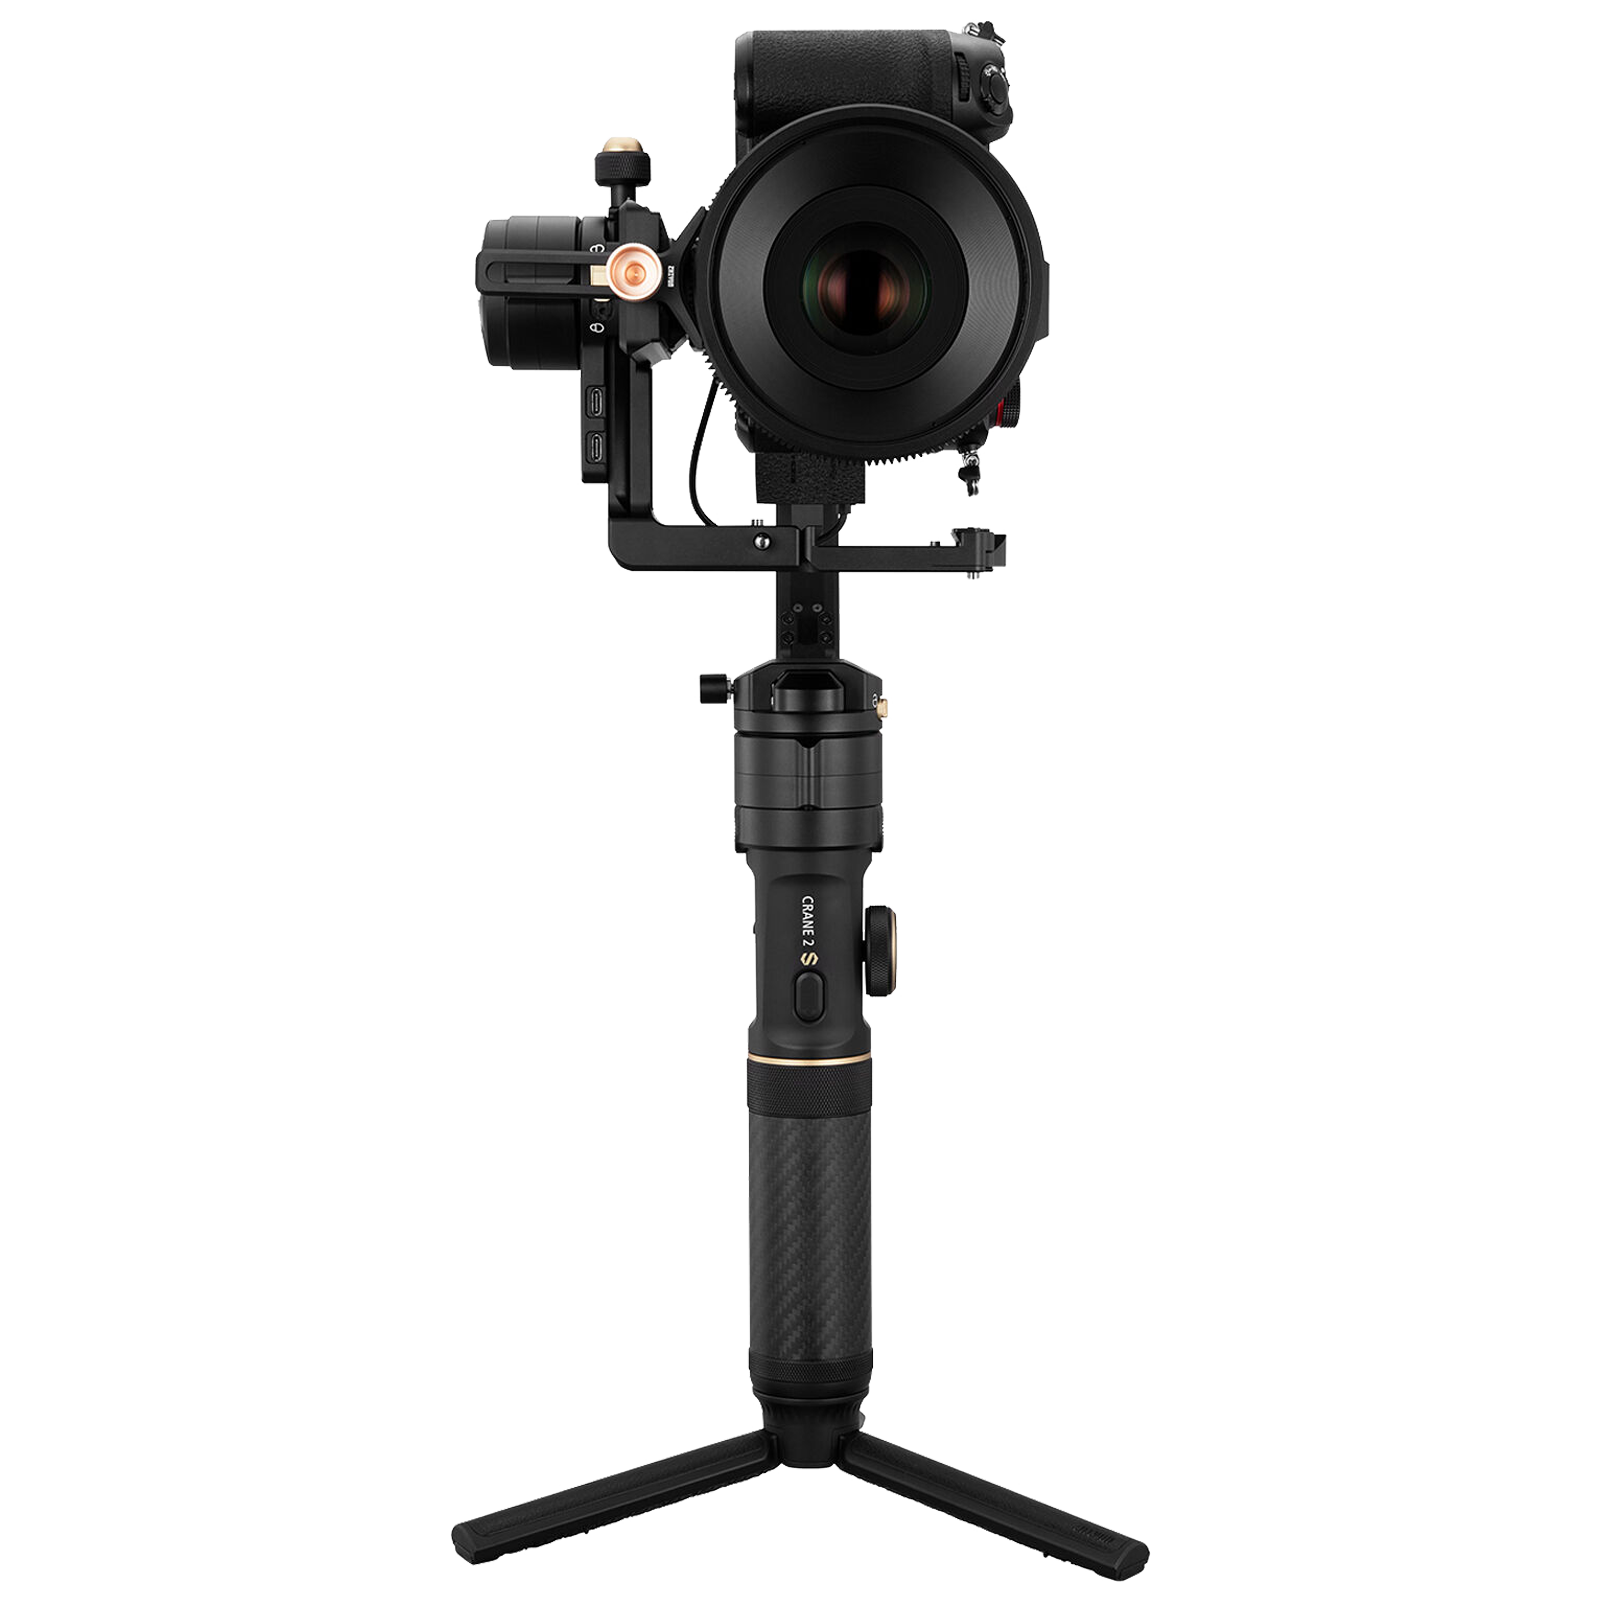 Zhiyun Crane 2S 3-Axis Gimble for Camera (Digital Focus Control, Black)